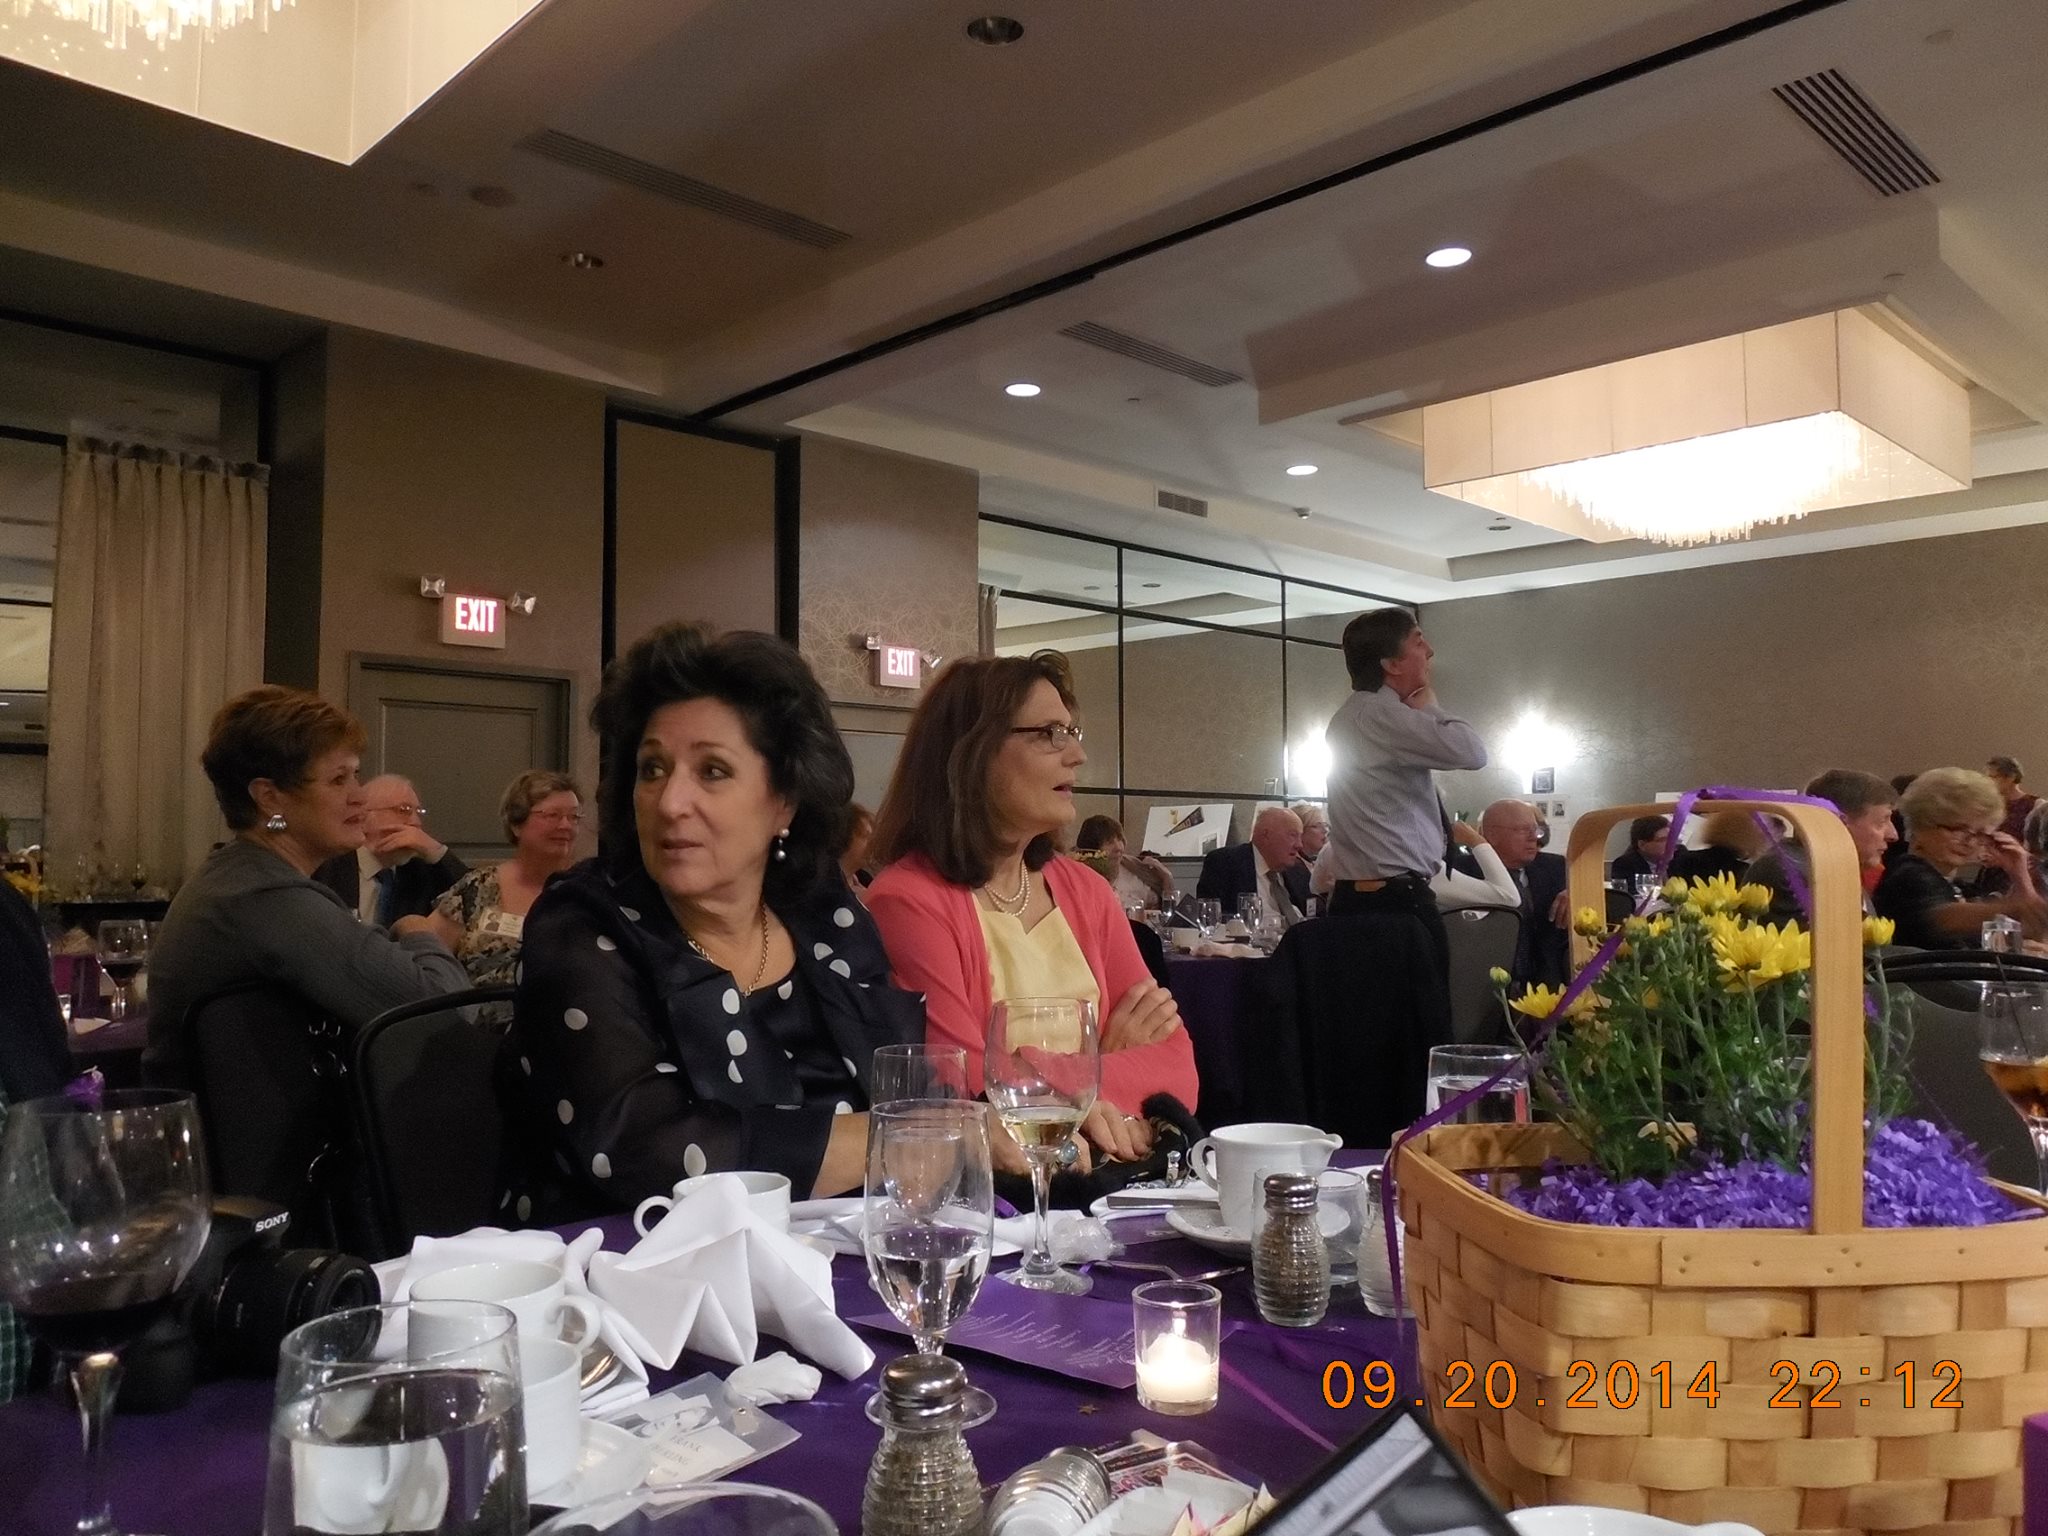 Susan Butler, Carolyn Duzy in background; Shelly Epstein, Suzanne Coletta in foreground 